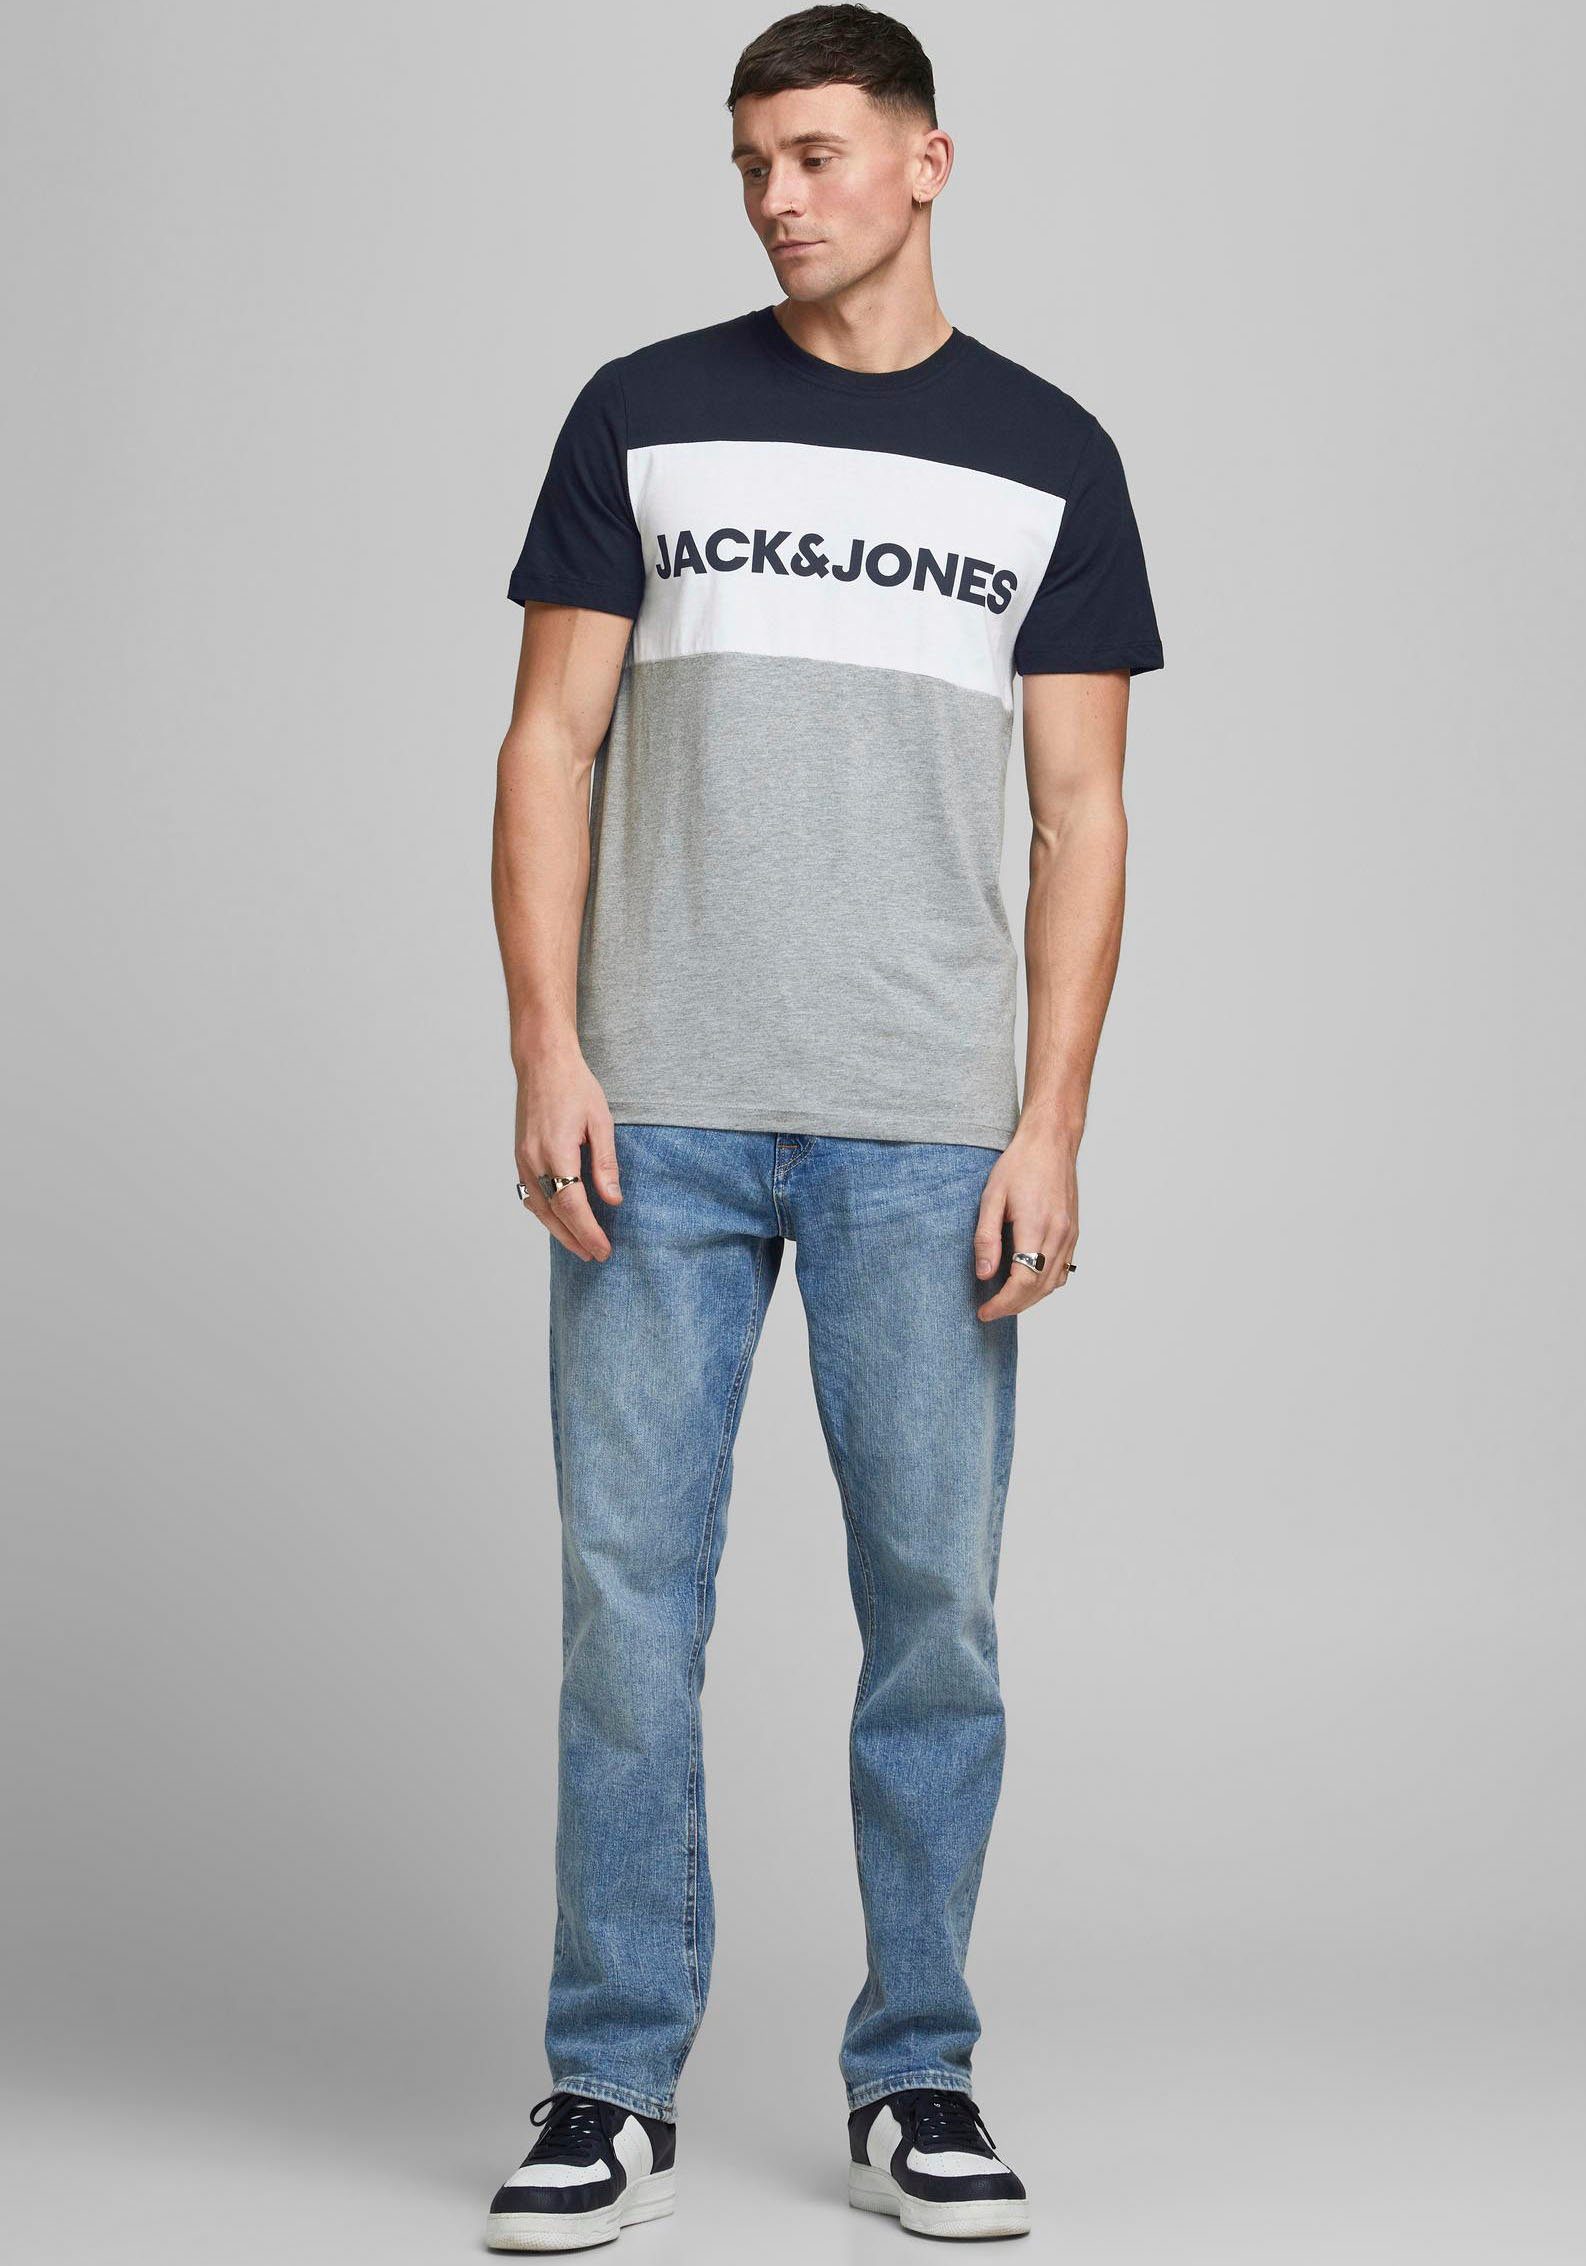 Jack & Jones T-Shirt »LOGO BLOCKIN« online kaufen | OTTO